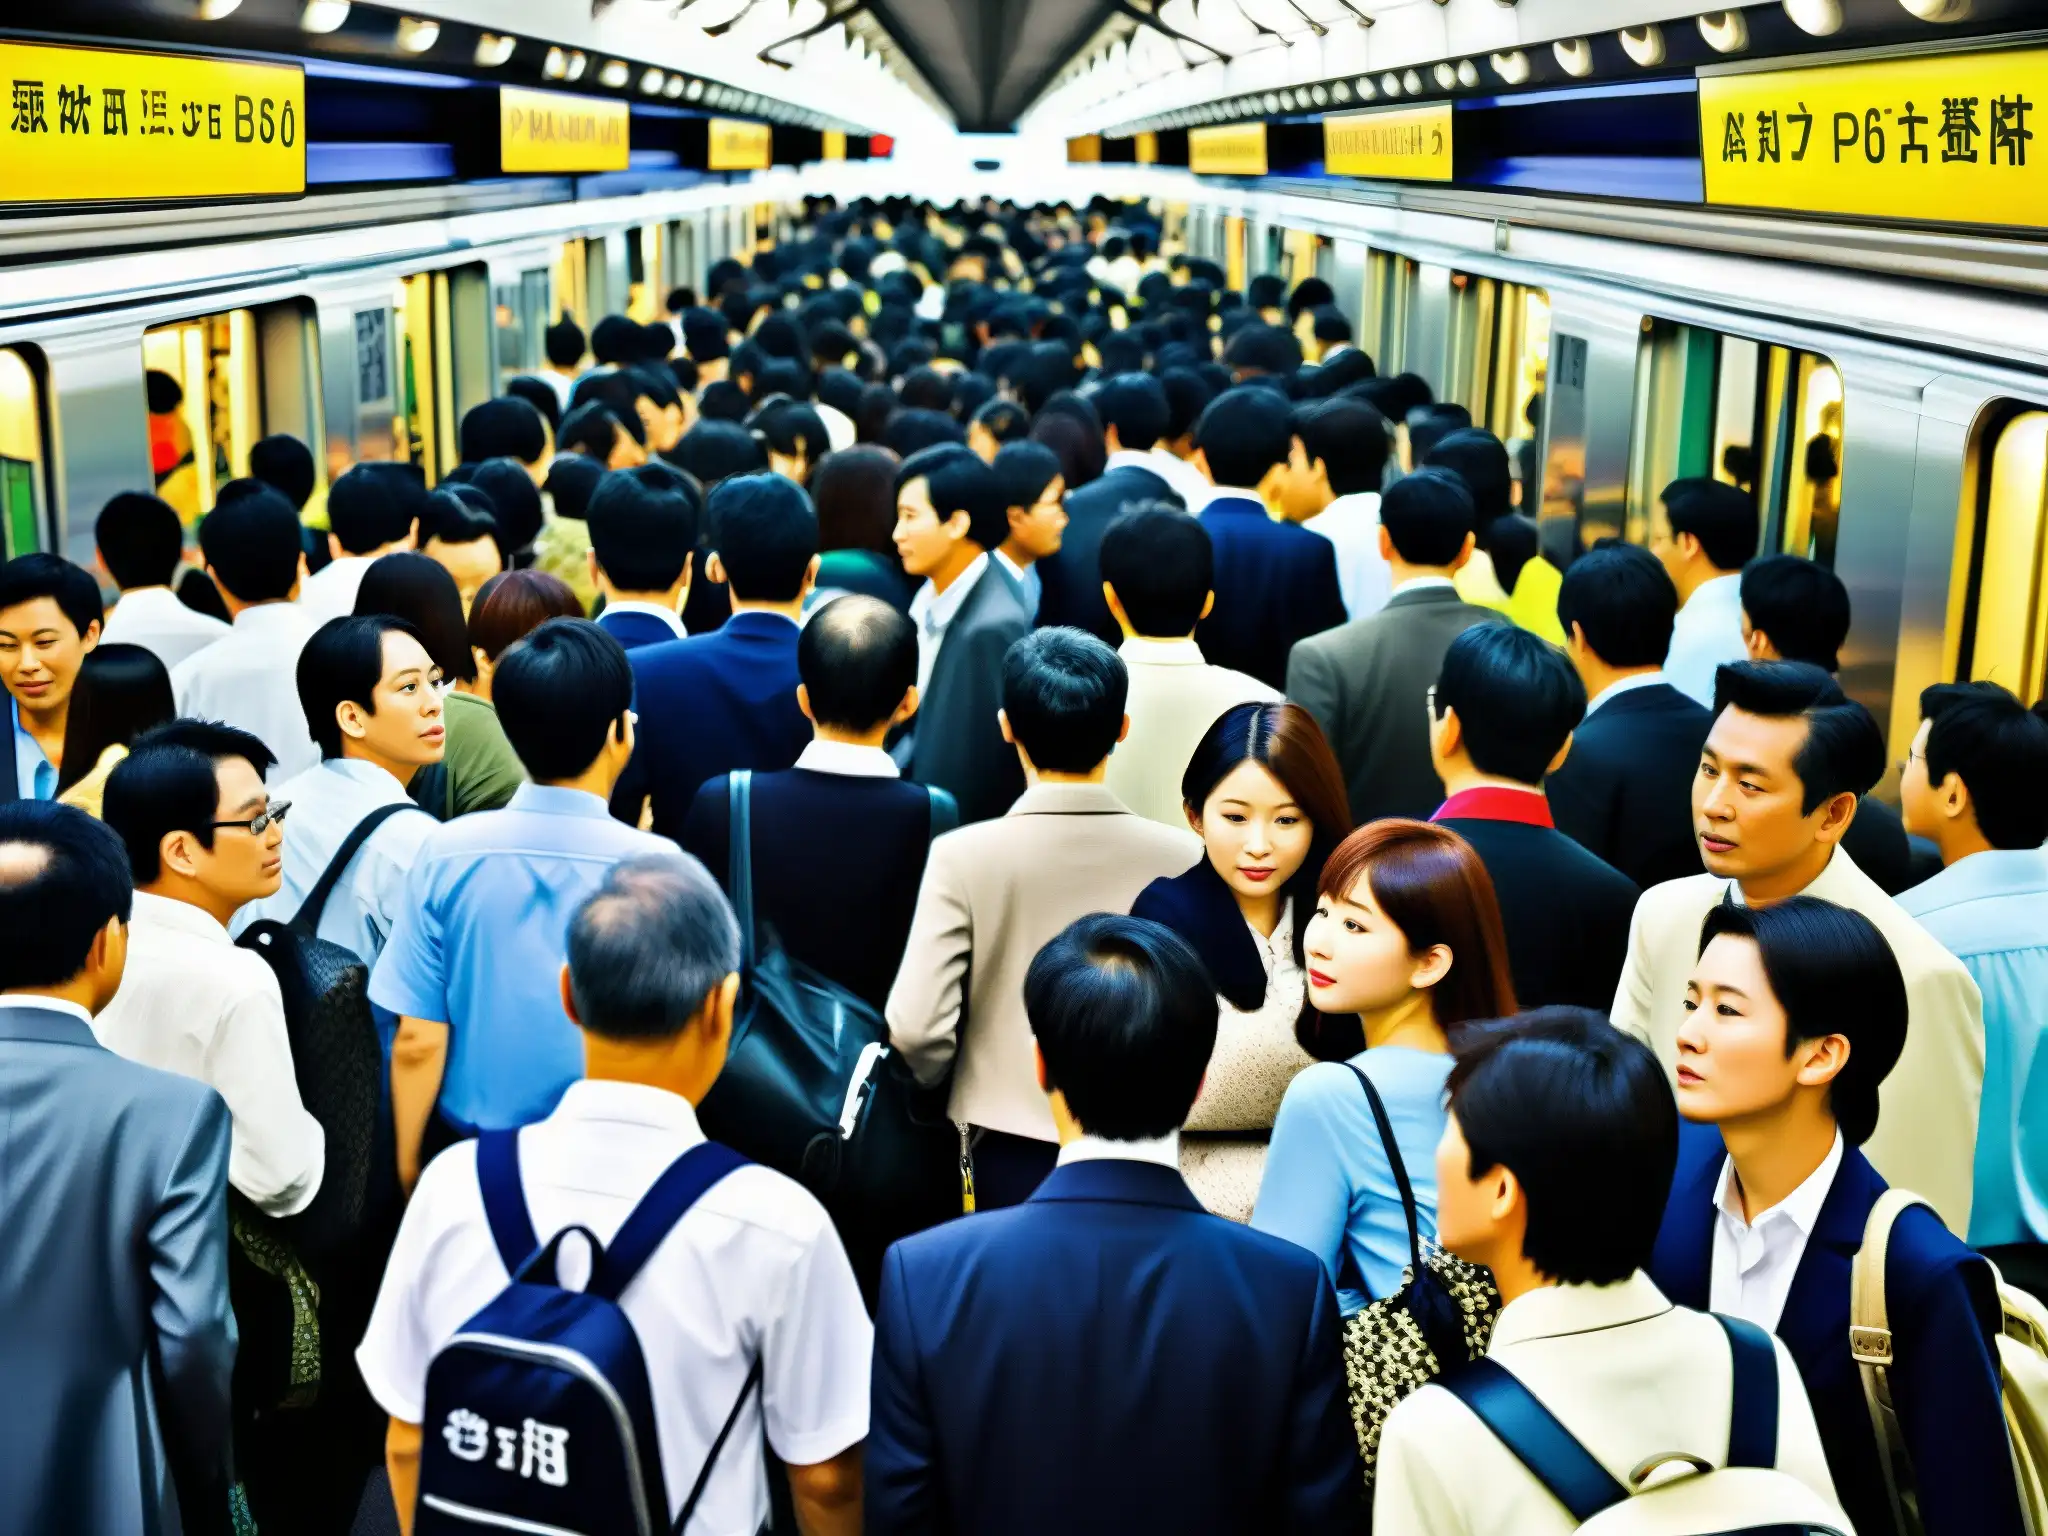 El bullicio del metro de Tokio durante la hora pico, con una multitud de pasajeros en las plataformas y trenes